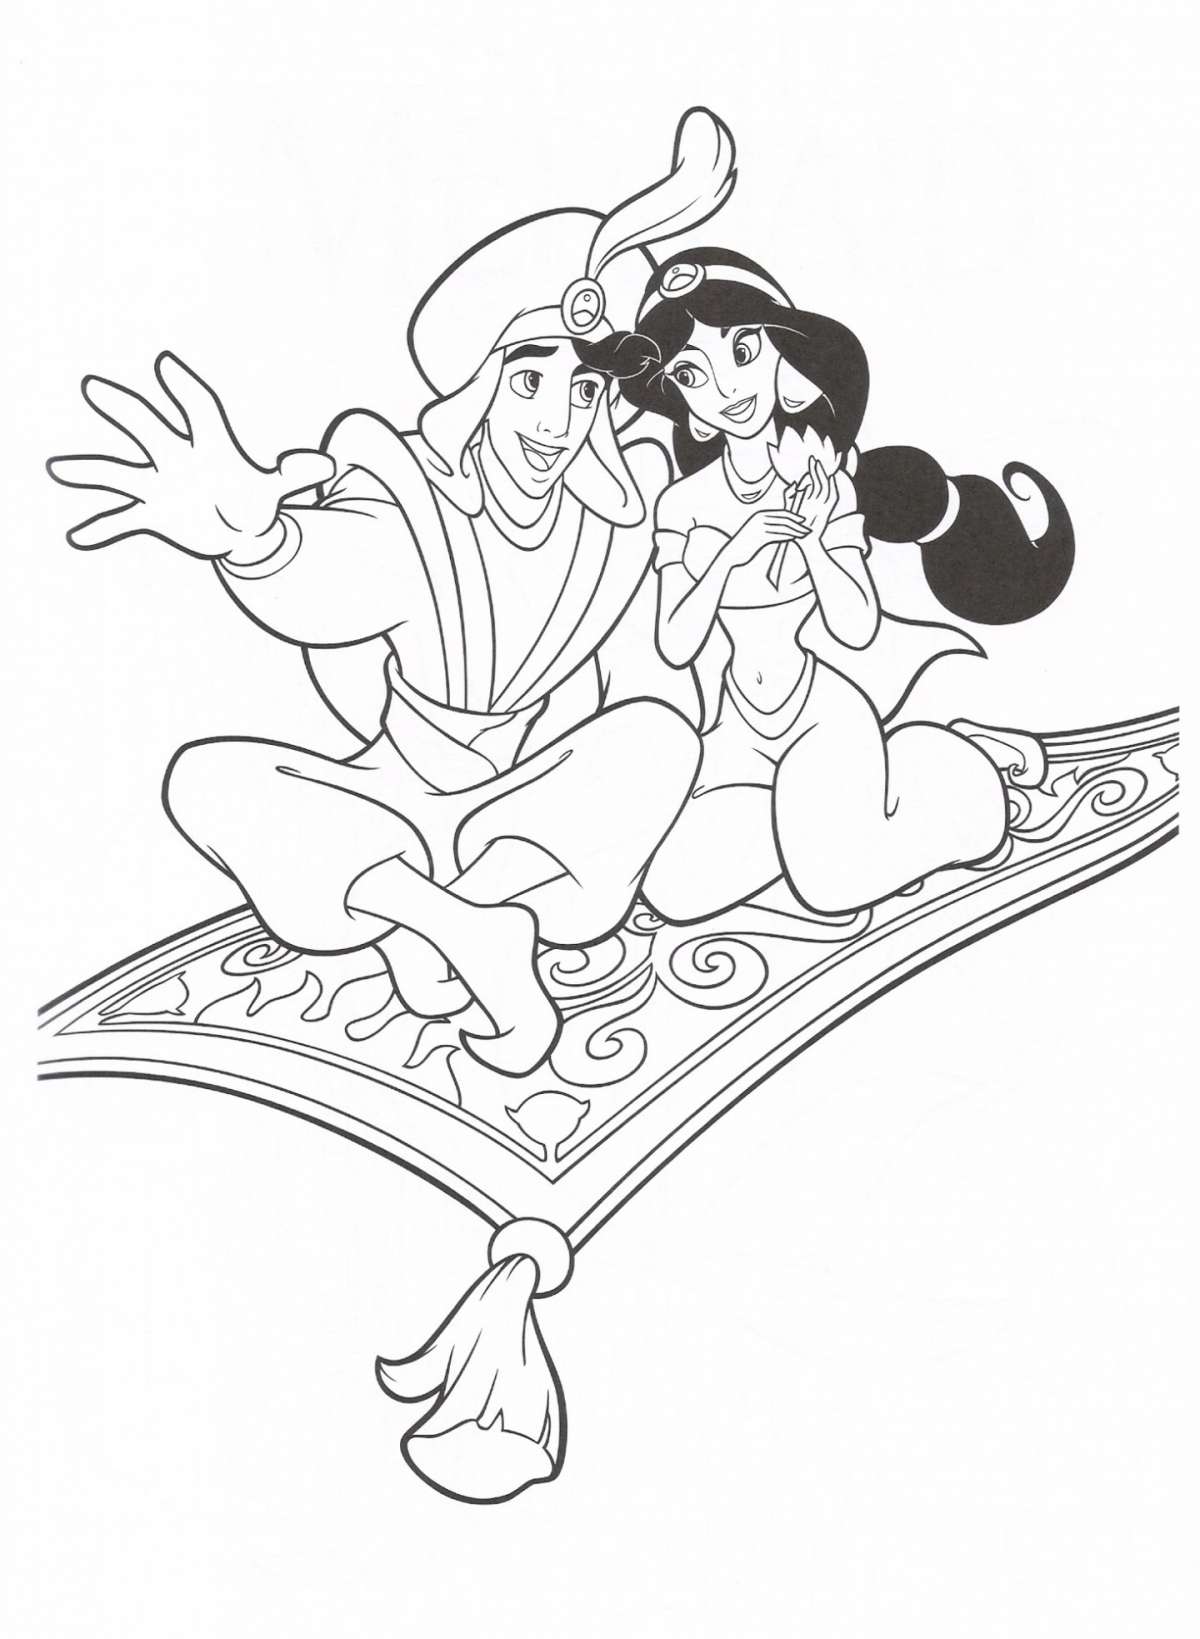 Principesse Disney da colorare Jasmine e Aladino